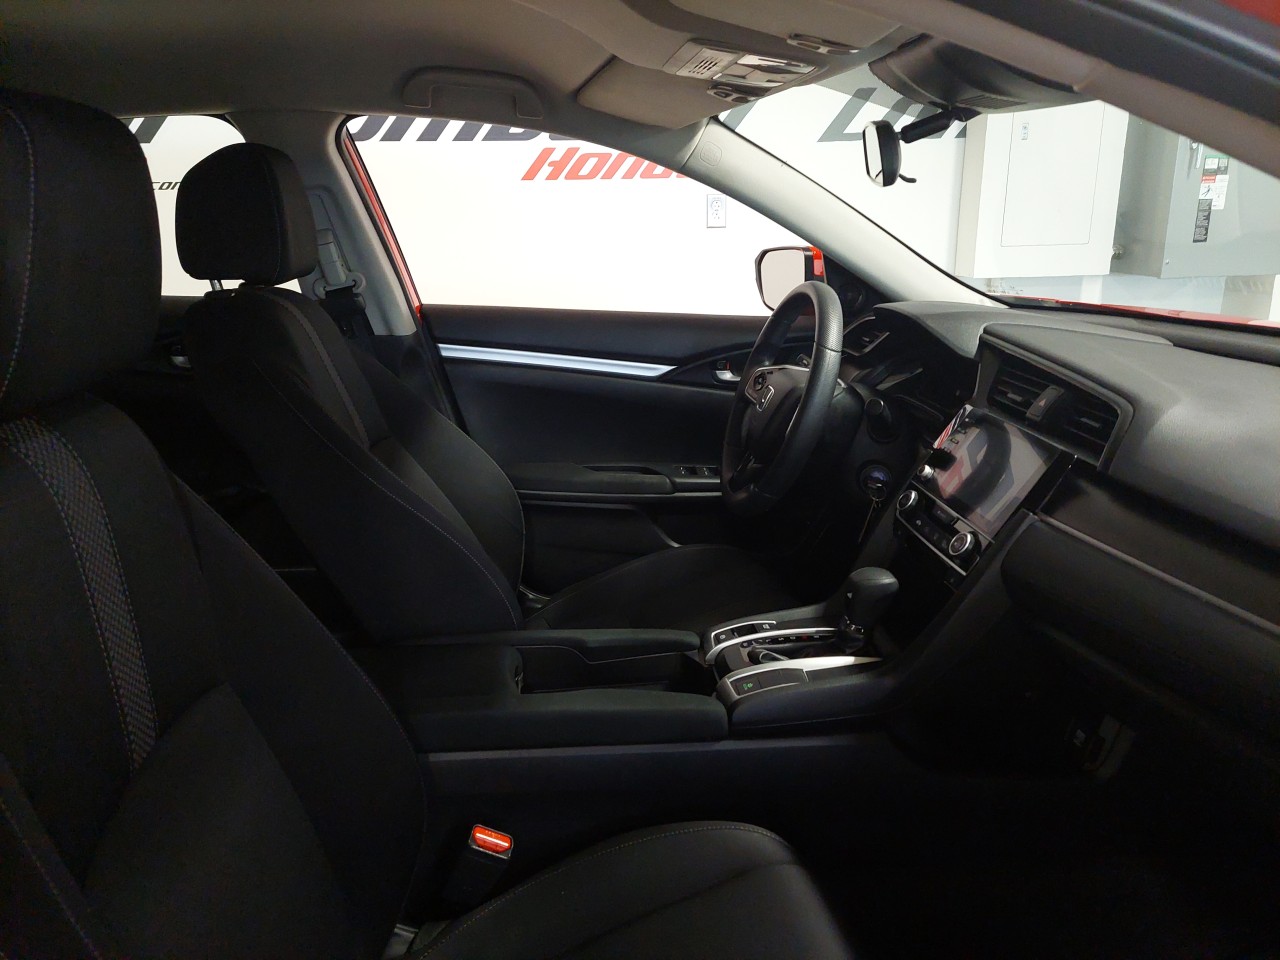 2021 Honda Civic LX Main Image